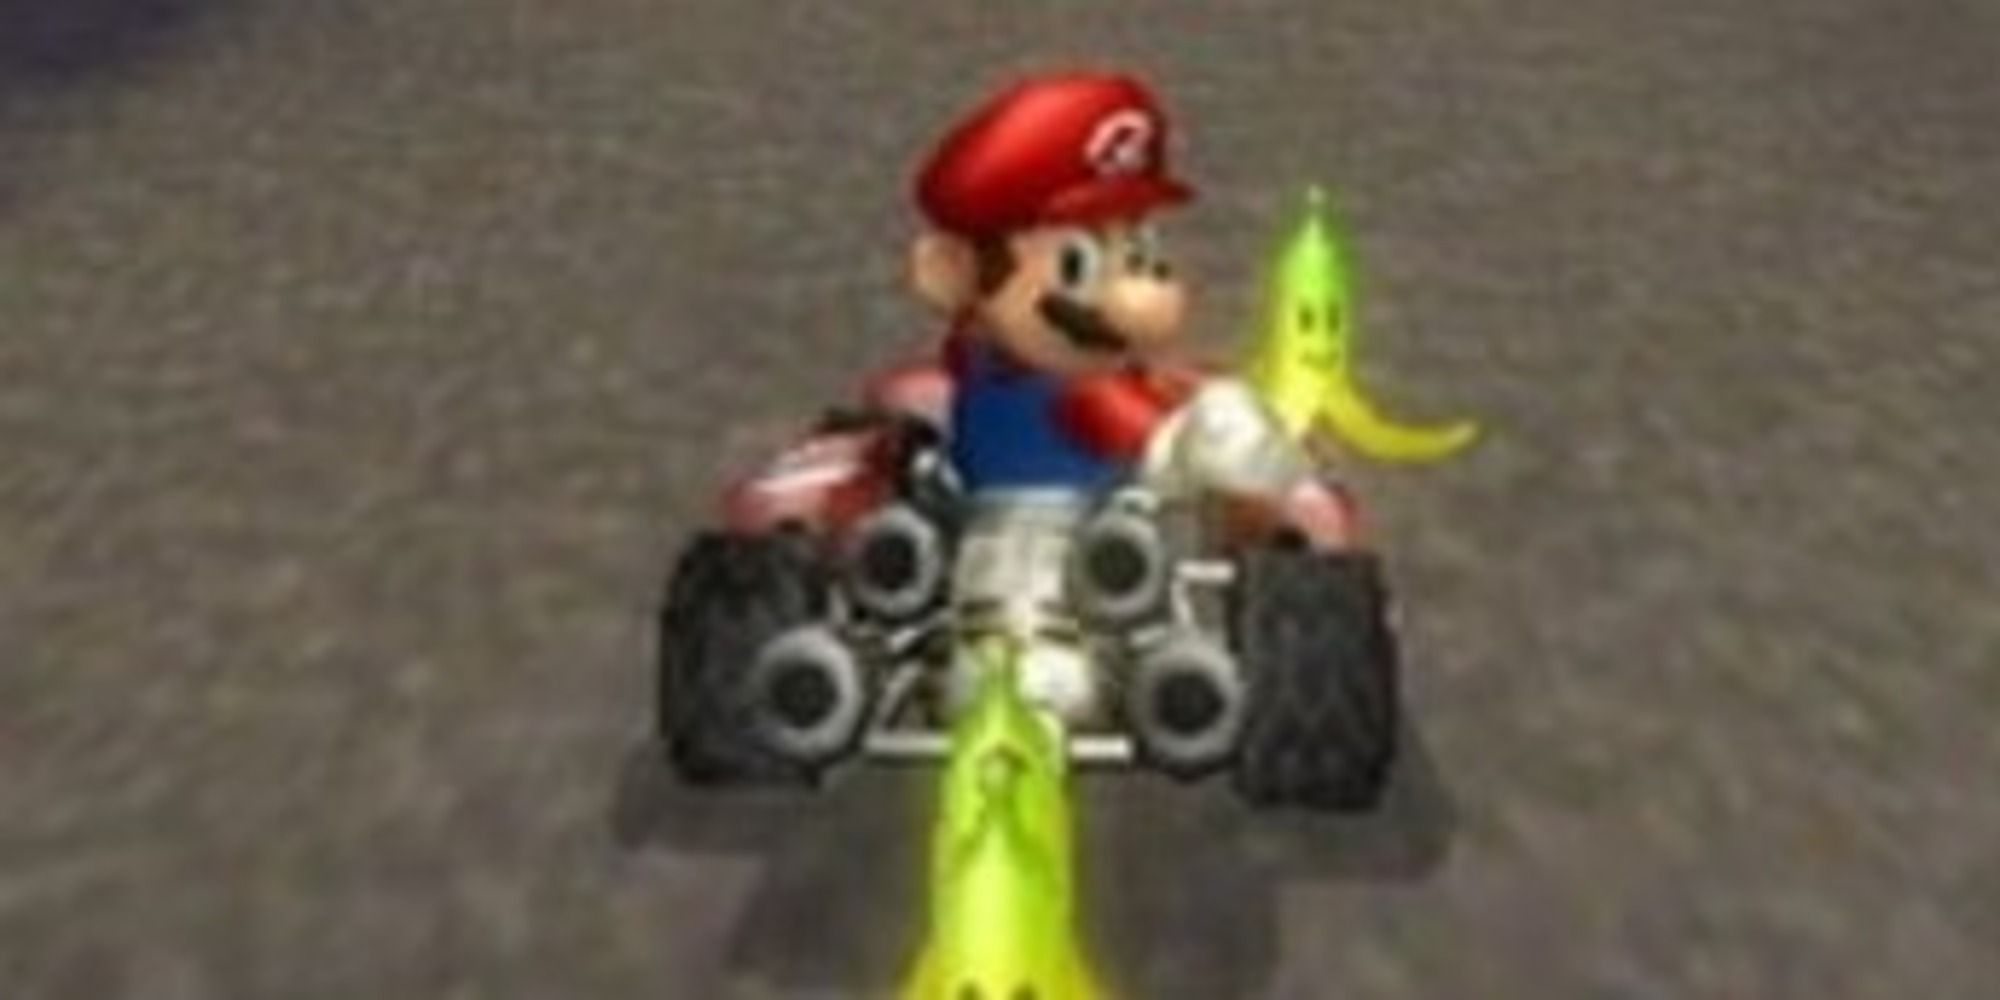 Mario Kart Double Dash Mario using bananas